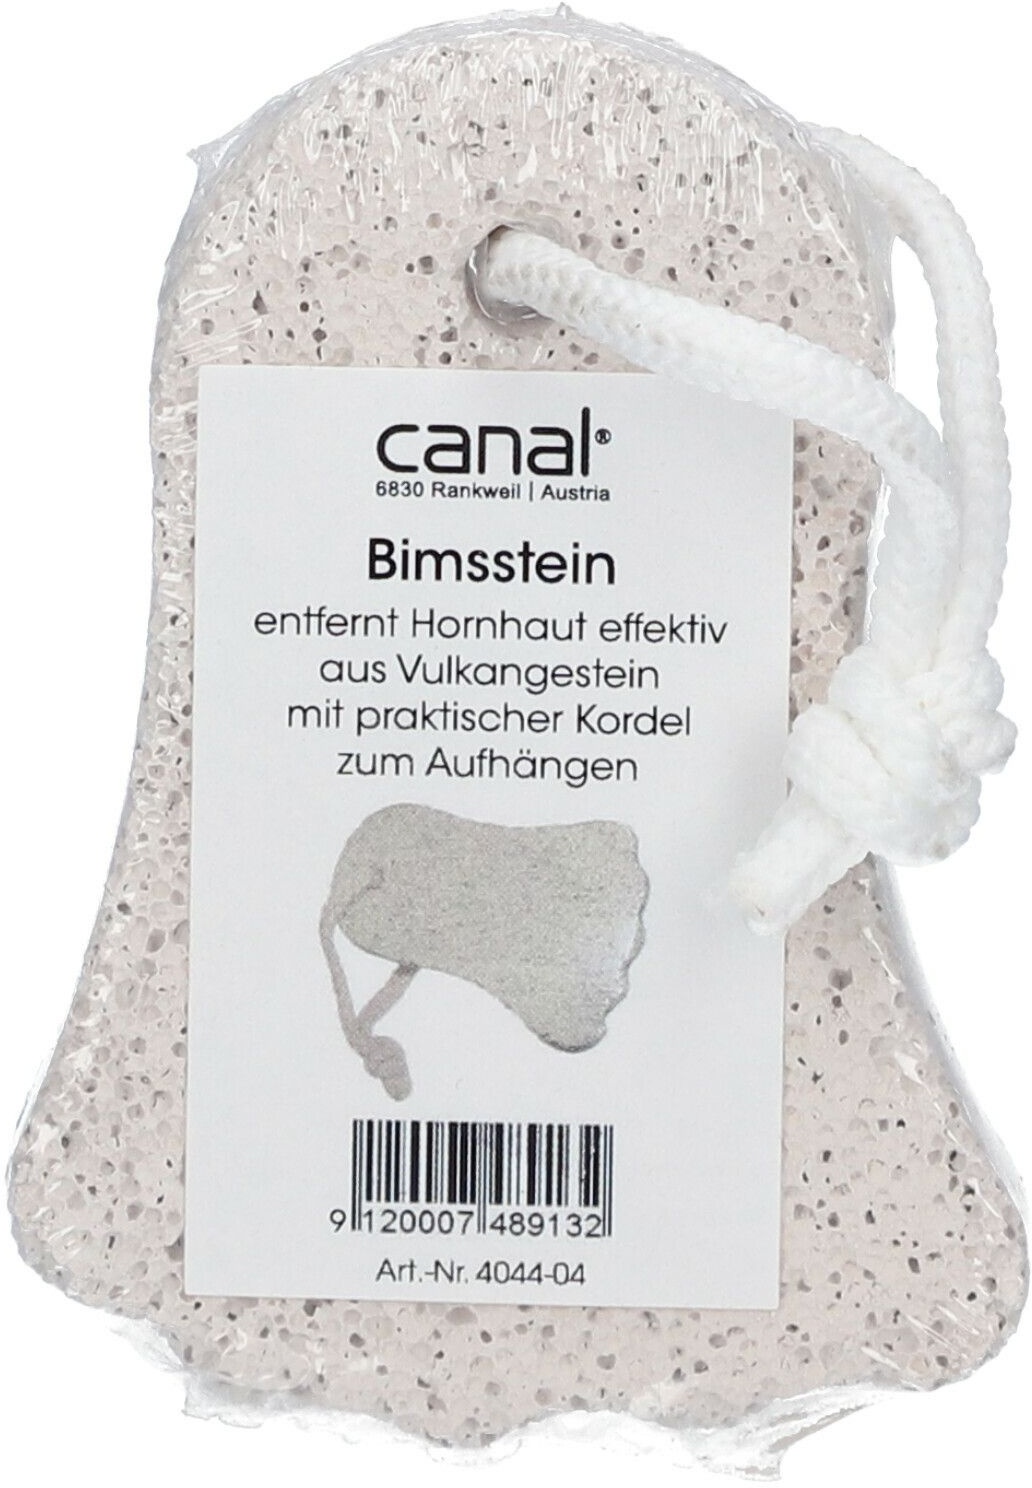 Canal® Bimsstein